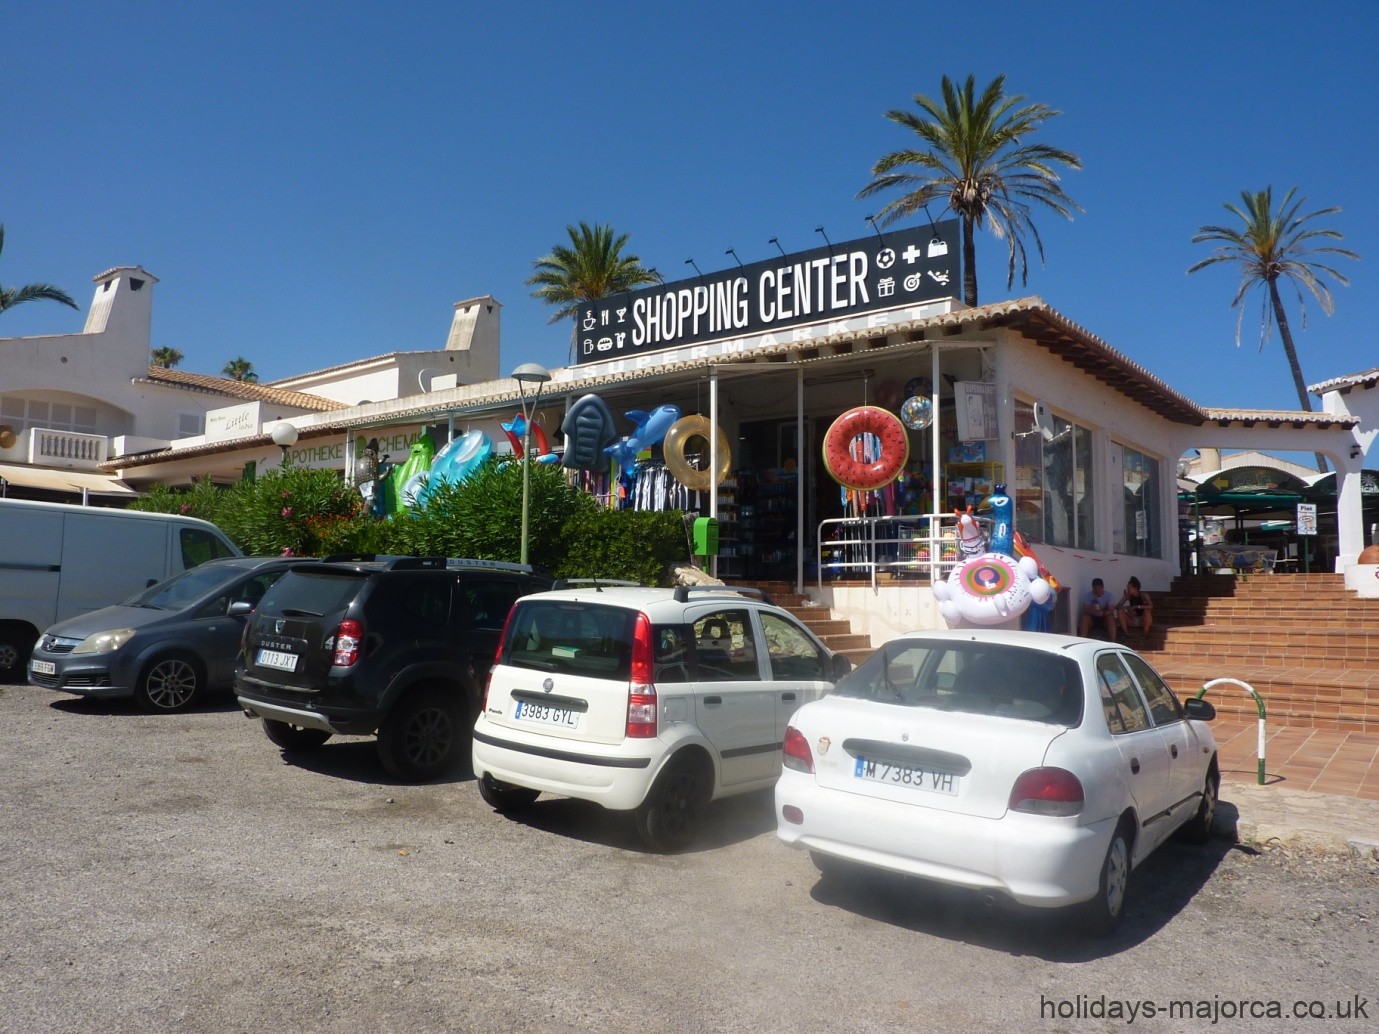 Cales de Mallorca shopping center